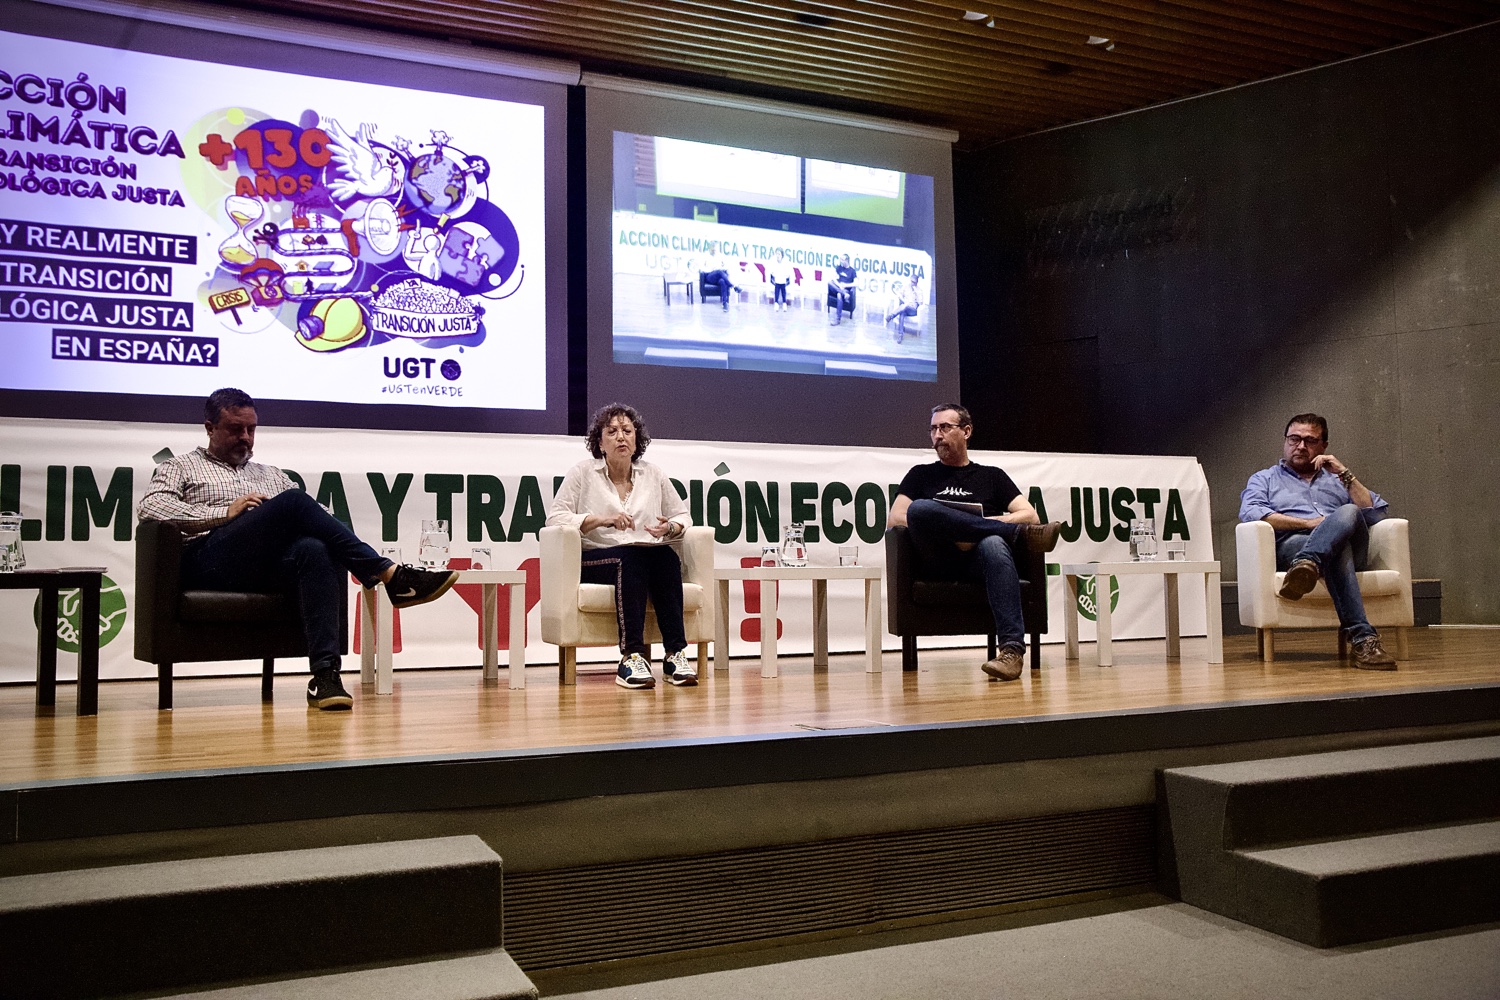 ¿Hay realmente una transición ecológica justa en España?